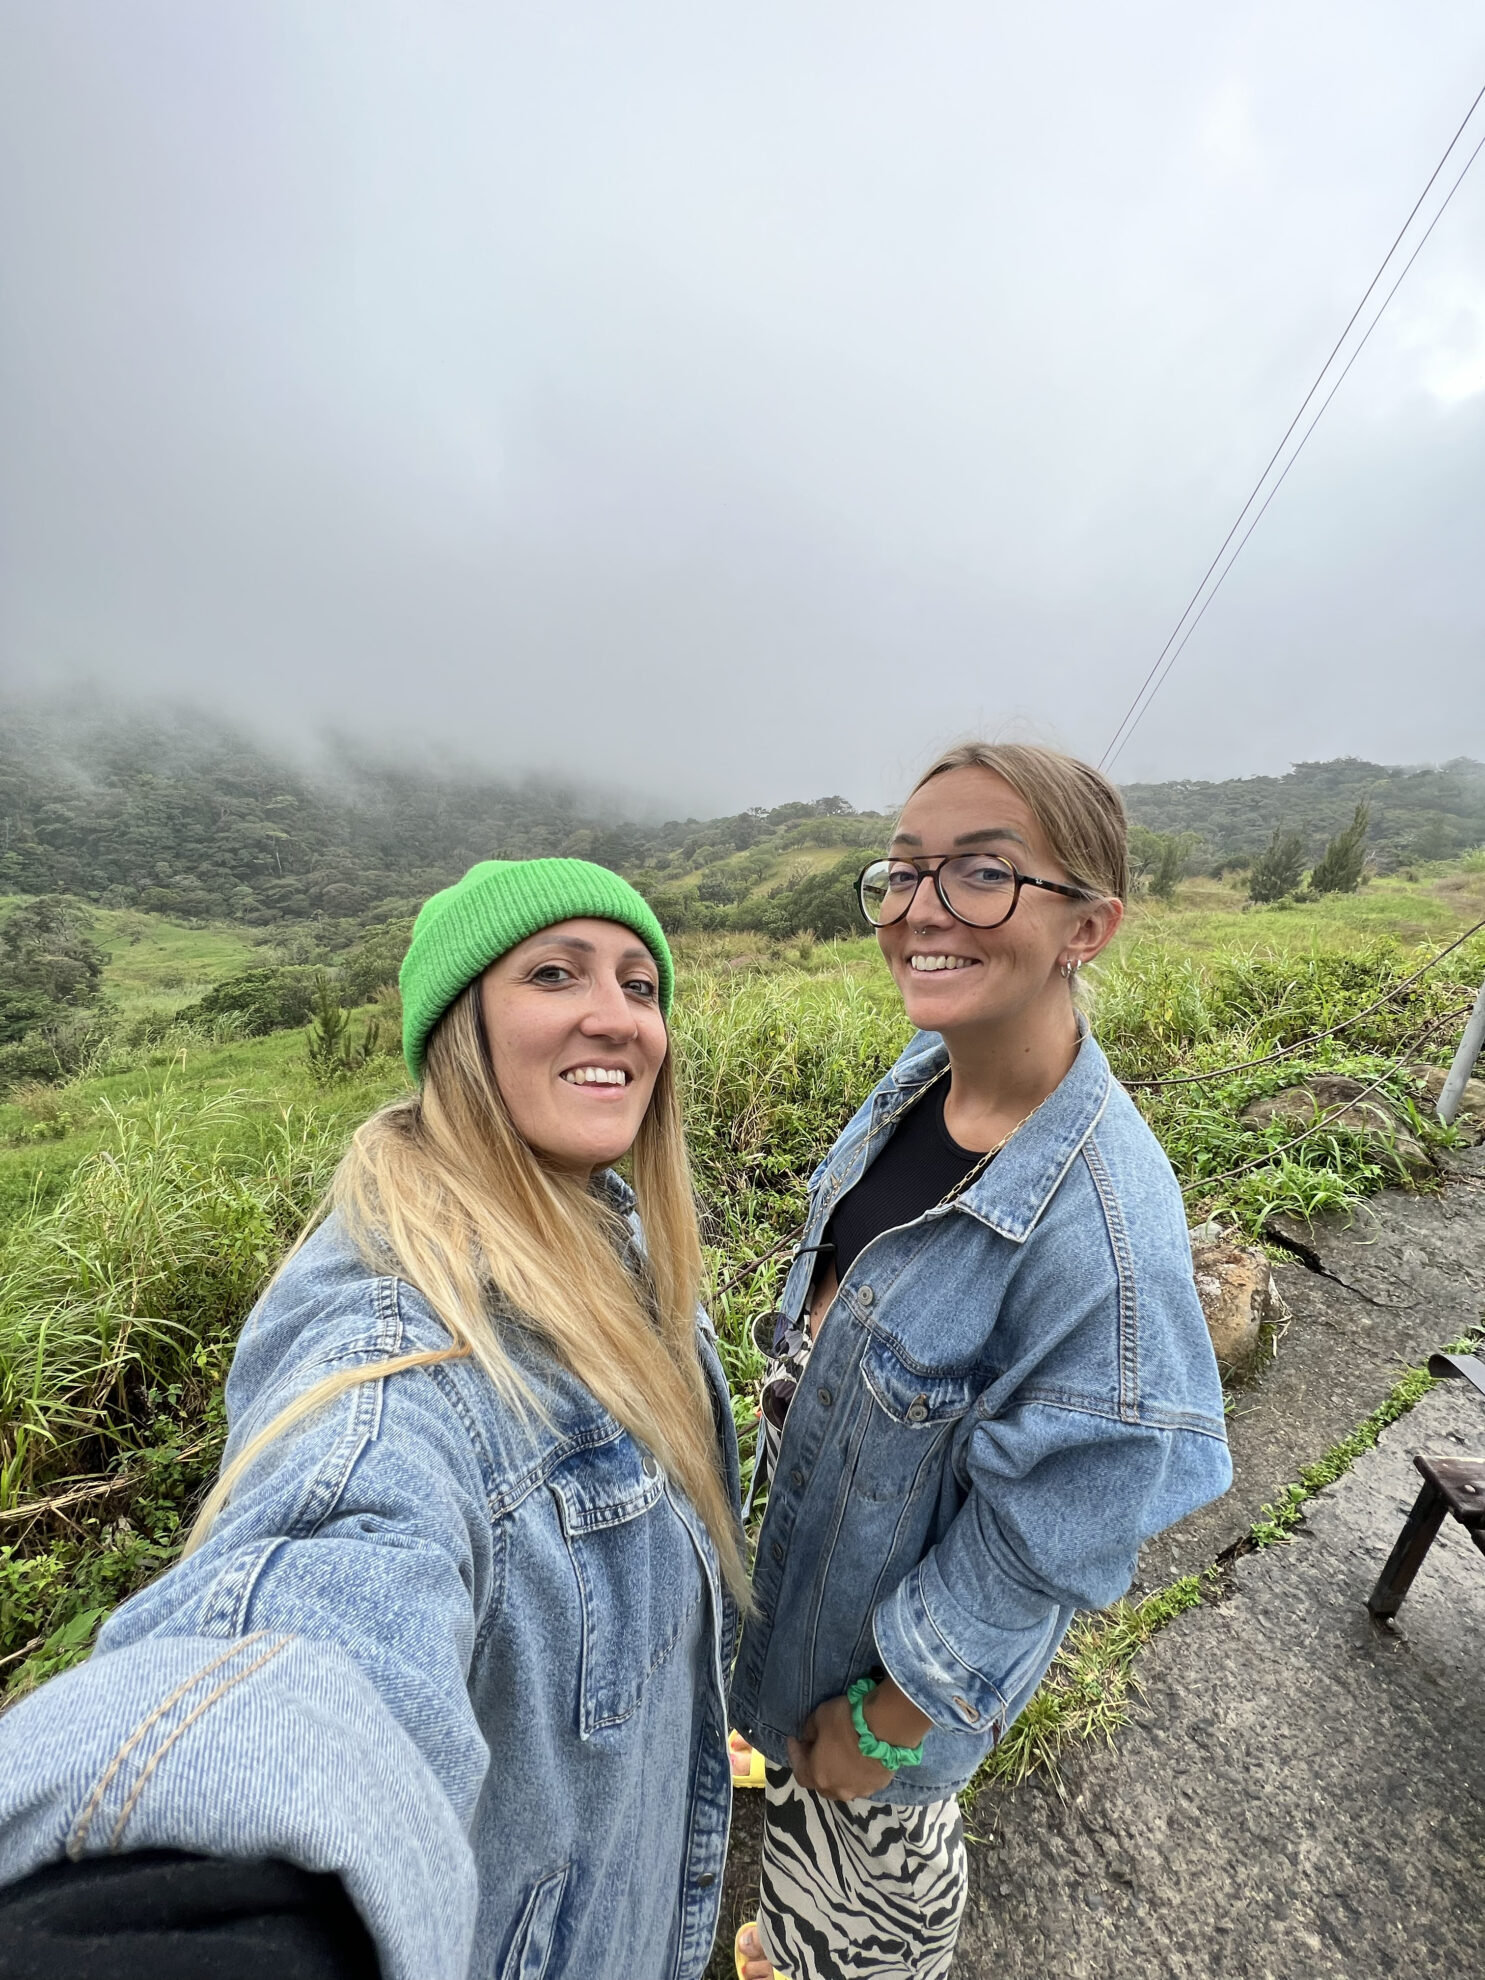 Veronica, “Il mio viaggio in Costa Rica